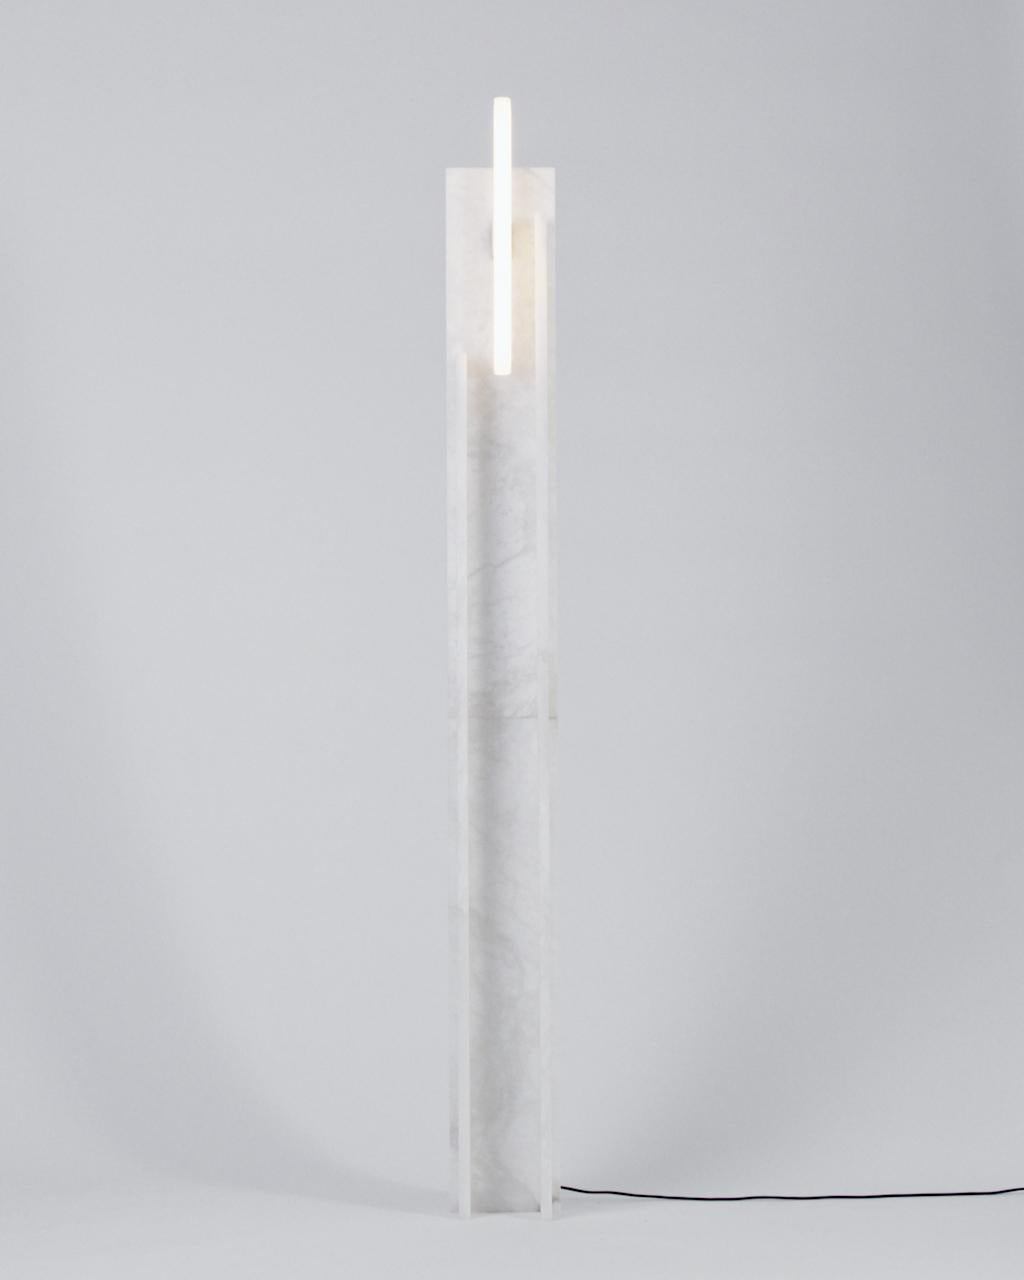 Große Alabasterlampe von Owl
Abmessungen: T20 x B20 x H190cm
MATERIALIEN: Massiver Alabaster.
Auch in anderen Abmessungen erhältlich. Bitte kontaktieren Sie uns.

Alle unsere Lampen können je nach Land verkabelt werden. Wenn es in die USA verkauft